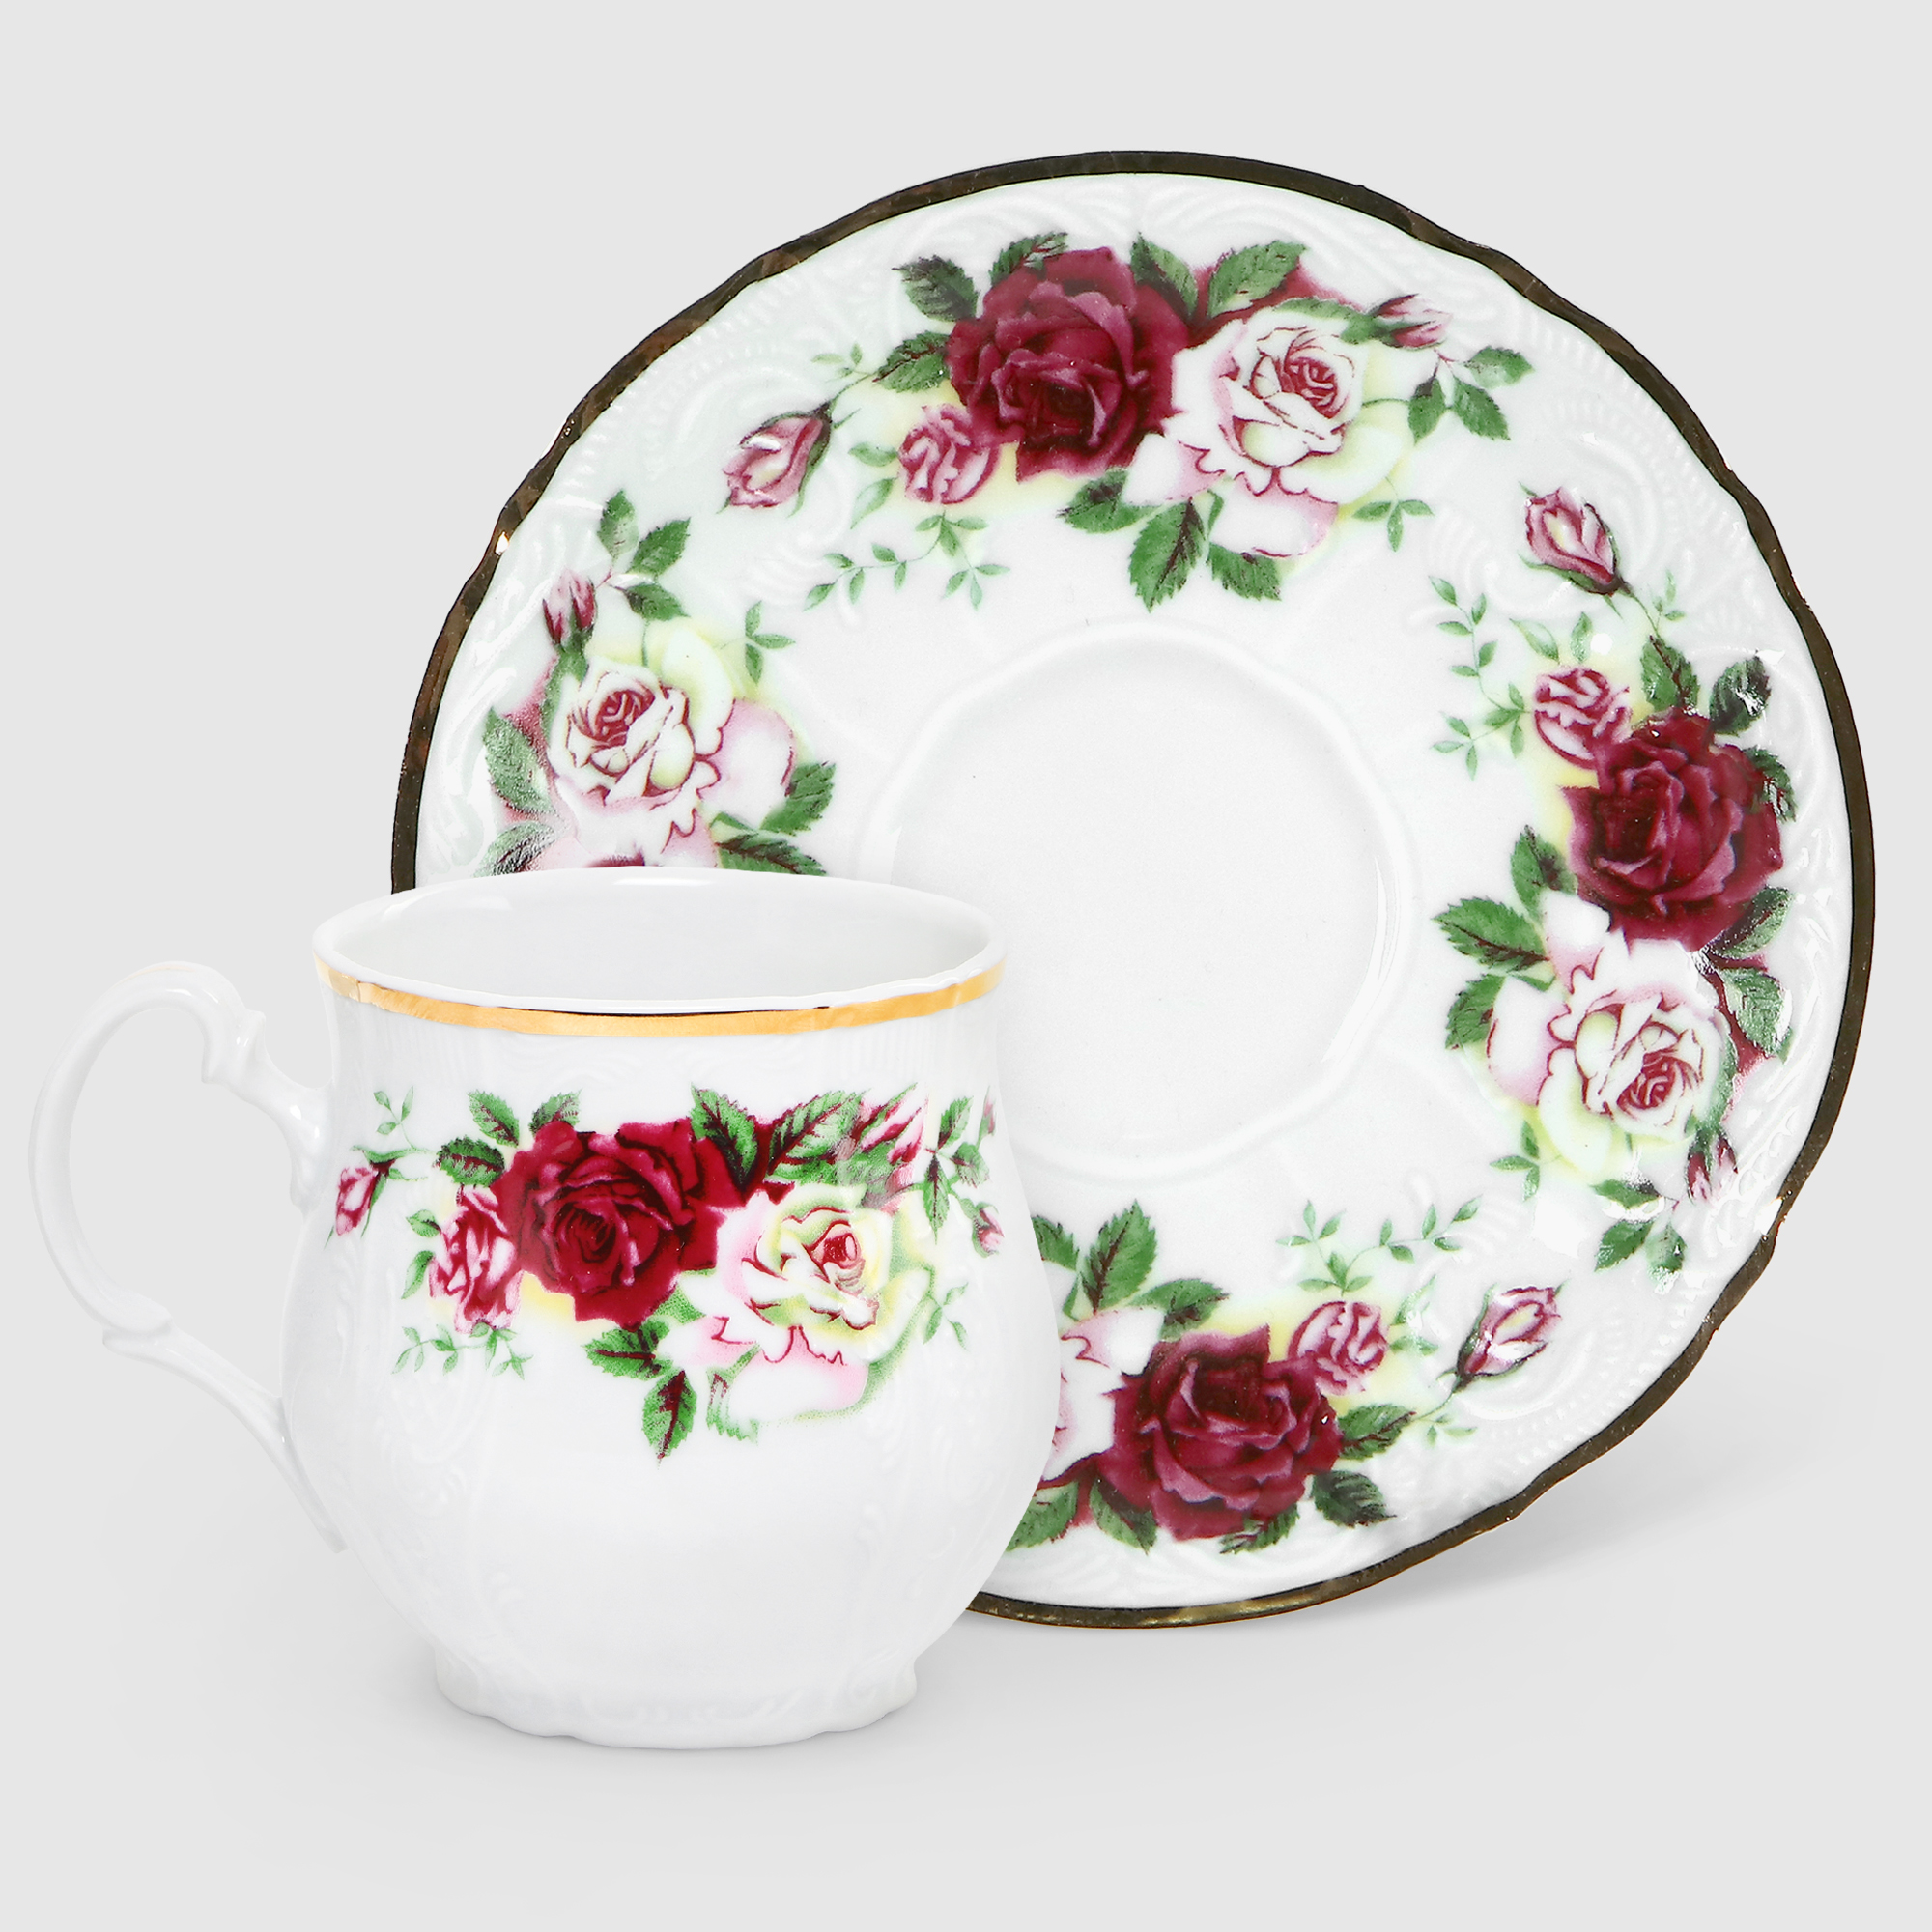 Чашка для чая с блюдцем Bernadotte Английская роза 310 мл 160 мм чашка 205 мл с блюдцем 155 мм bernadotte английская роза низкая